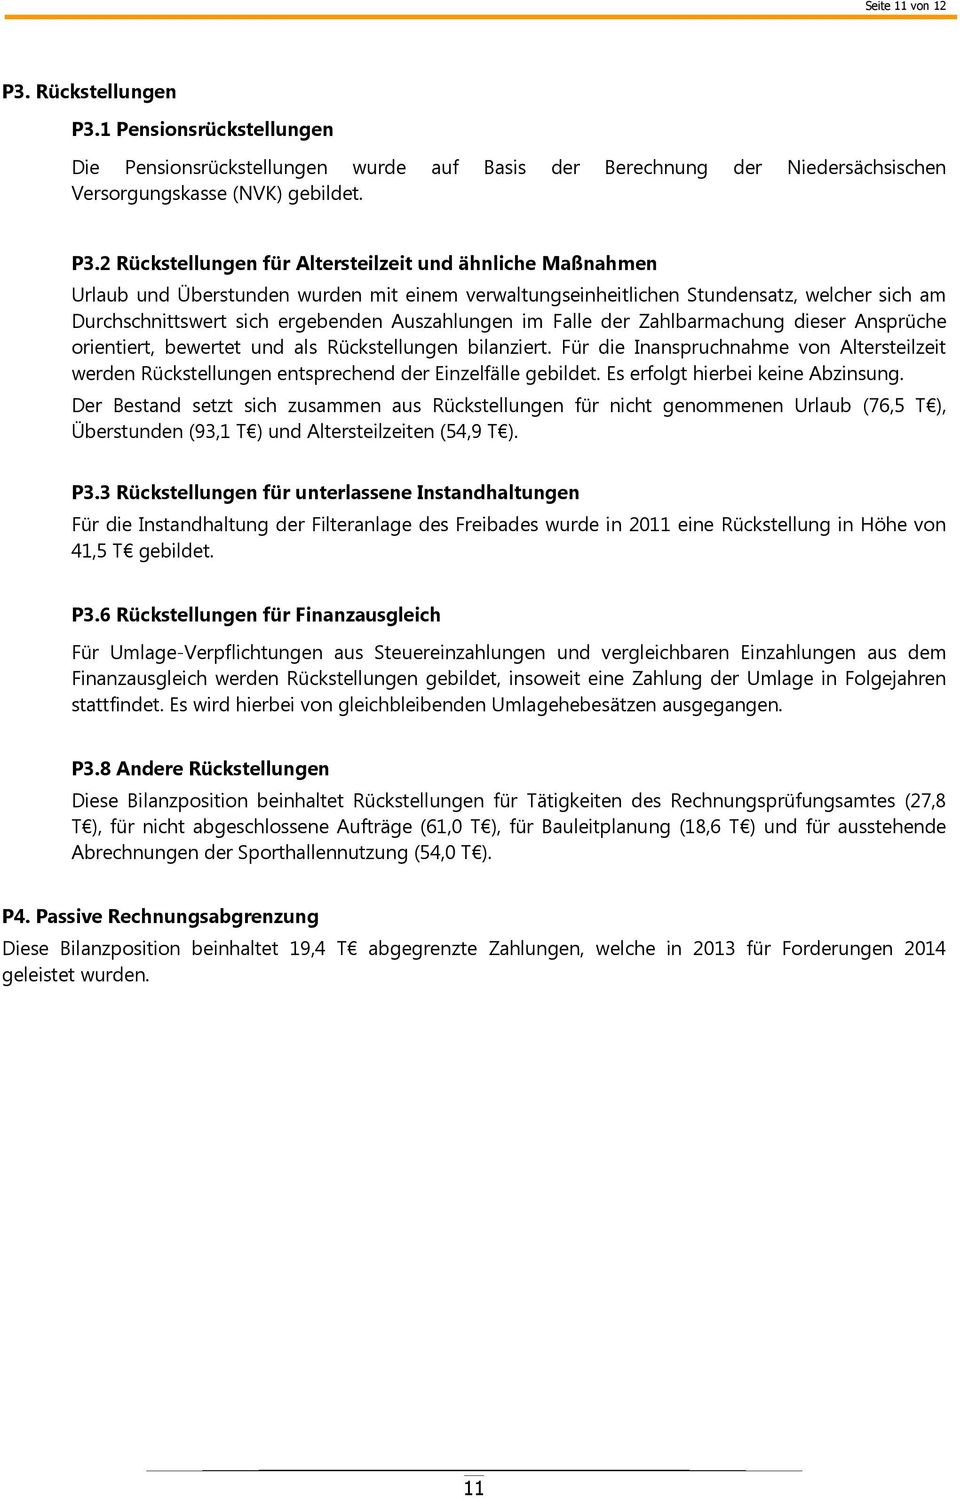 1 Pensionsrückstellungen Die Pensionsrückstellungen wurde auf Basis der Berechnung der Niedersächsischen Versorgungskasse (NVK) gebildet. P3.